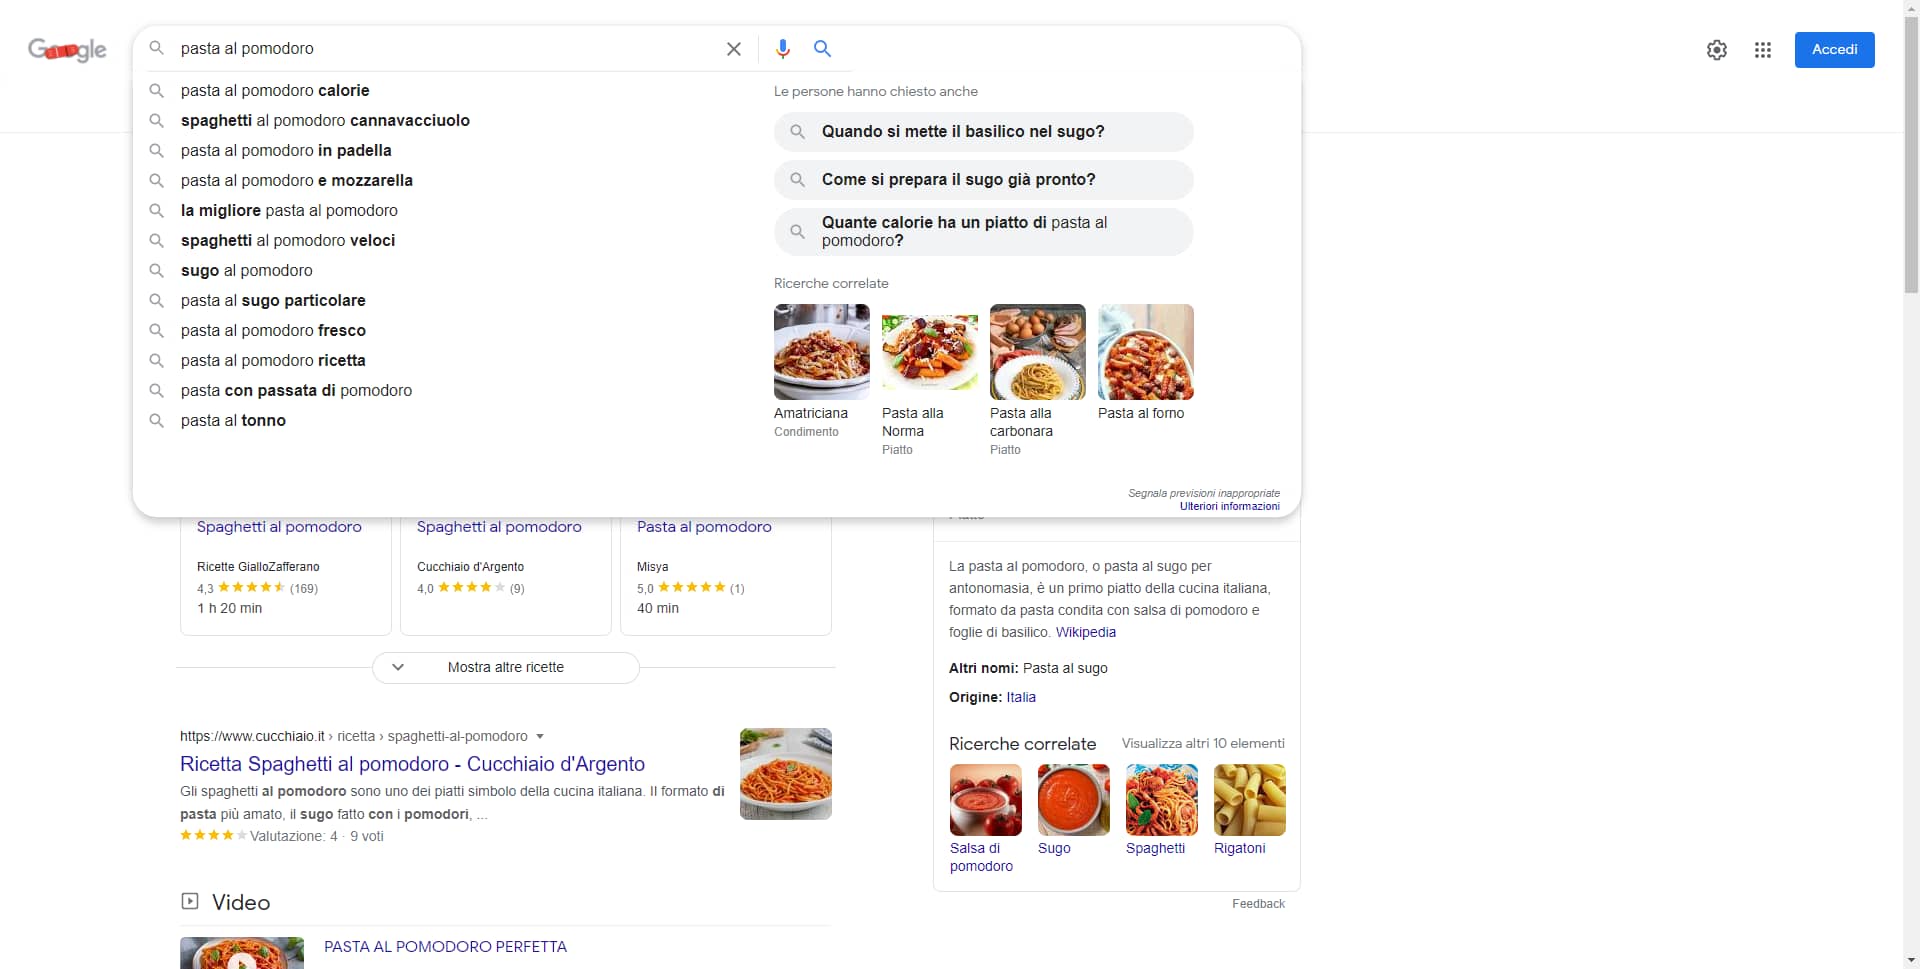 Nuova interfaccia di Google Search (ancora in test) - immagine 1